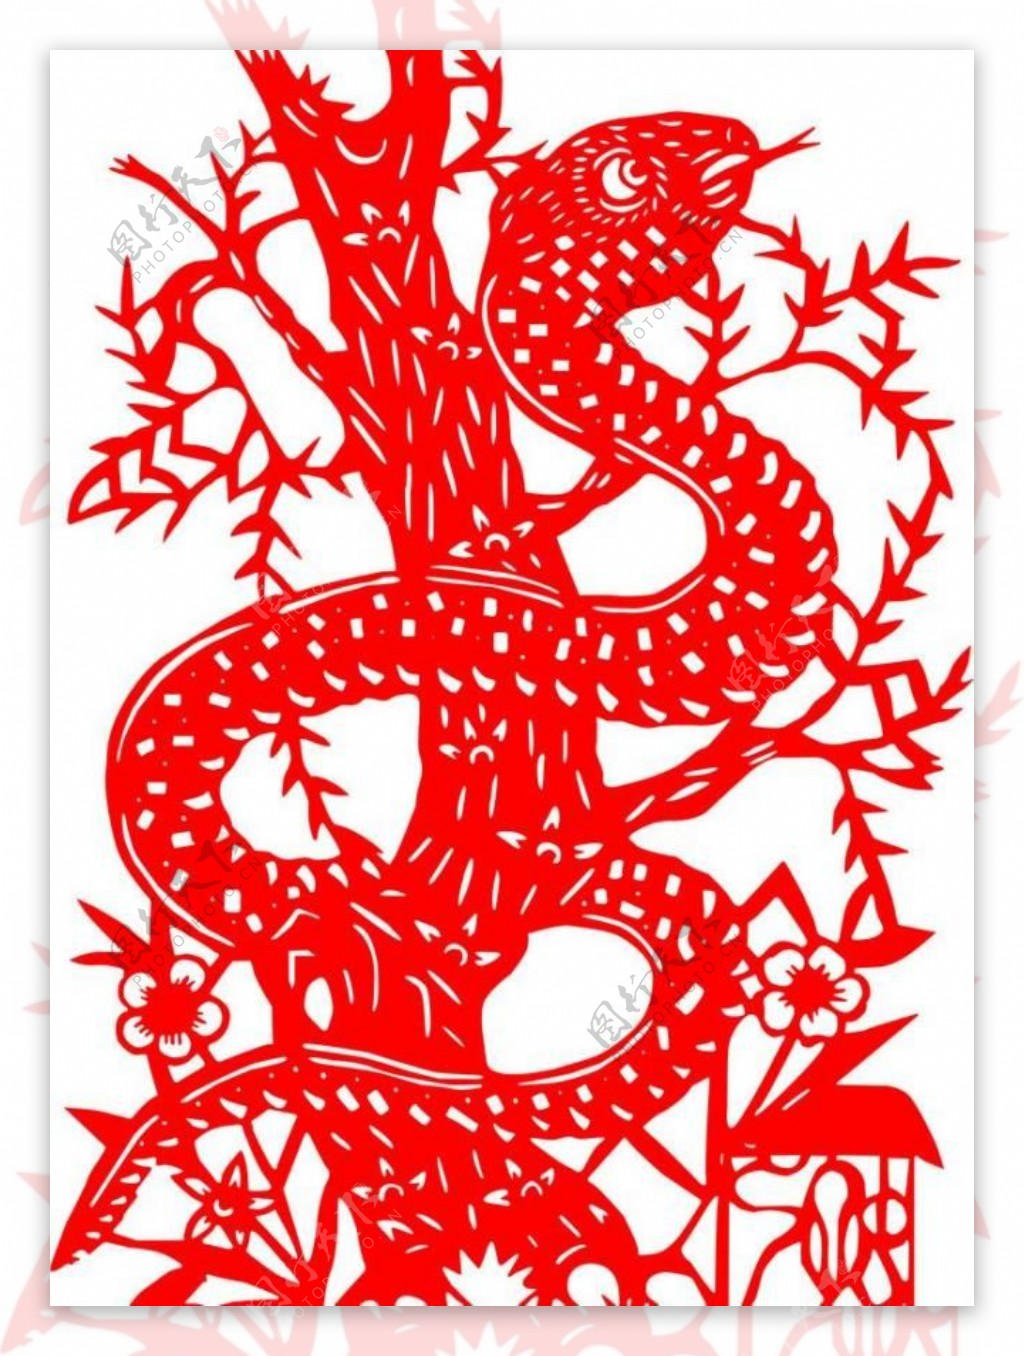 春节红色剪纸蛇图片